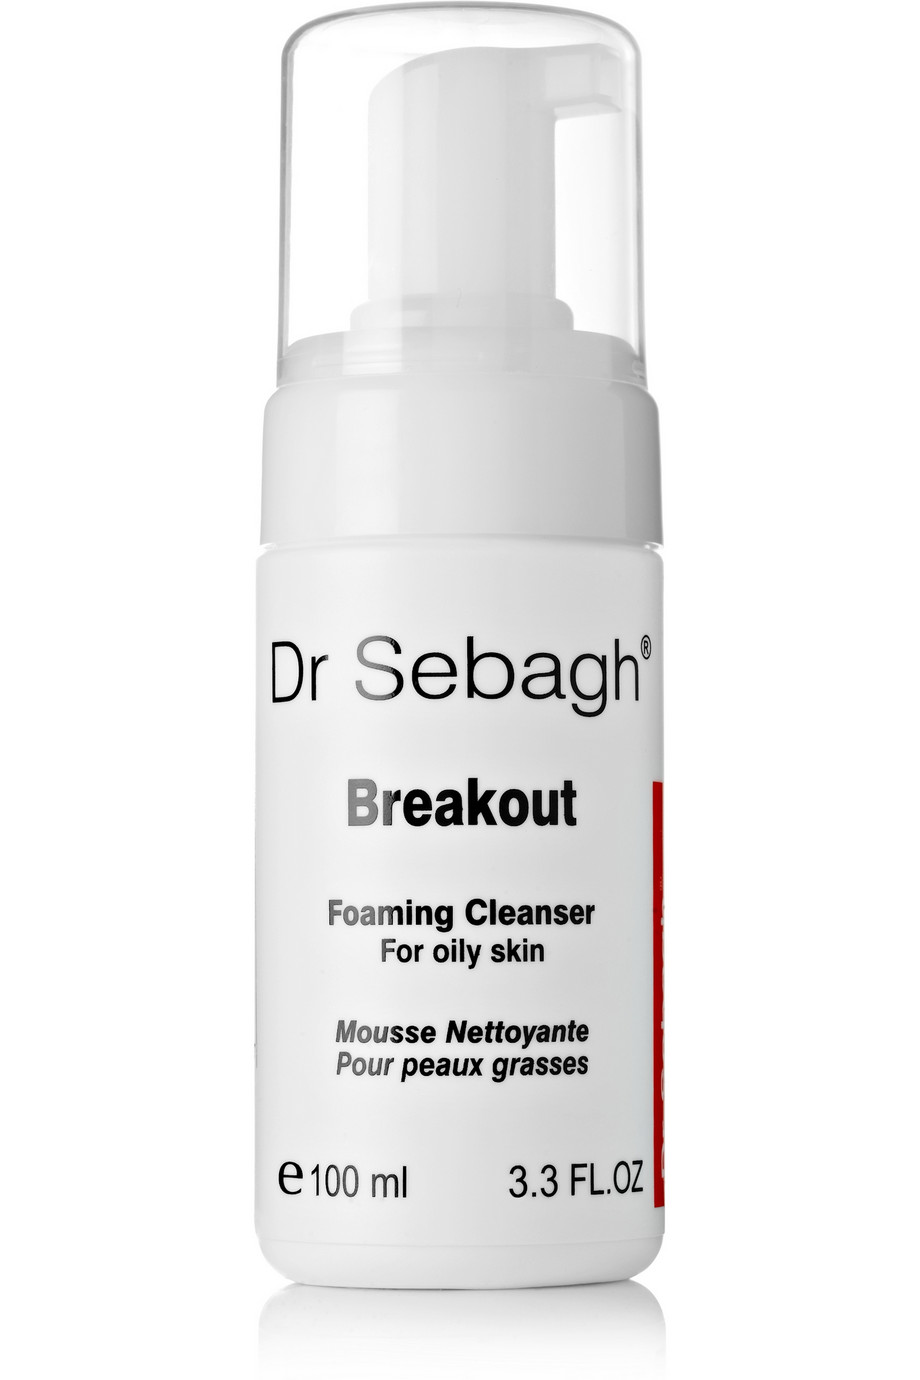 Dr Sebagh Breakout Foaming Cleanser 100ml - интернет-магазин профессиональной косметики Spadream, изображение 17736